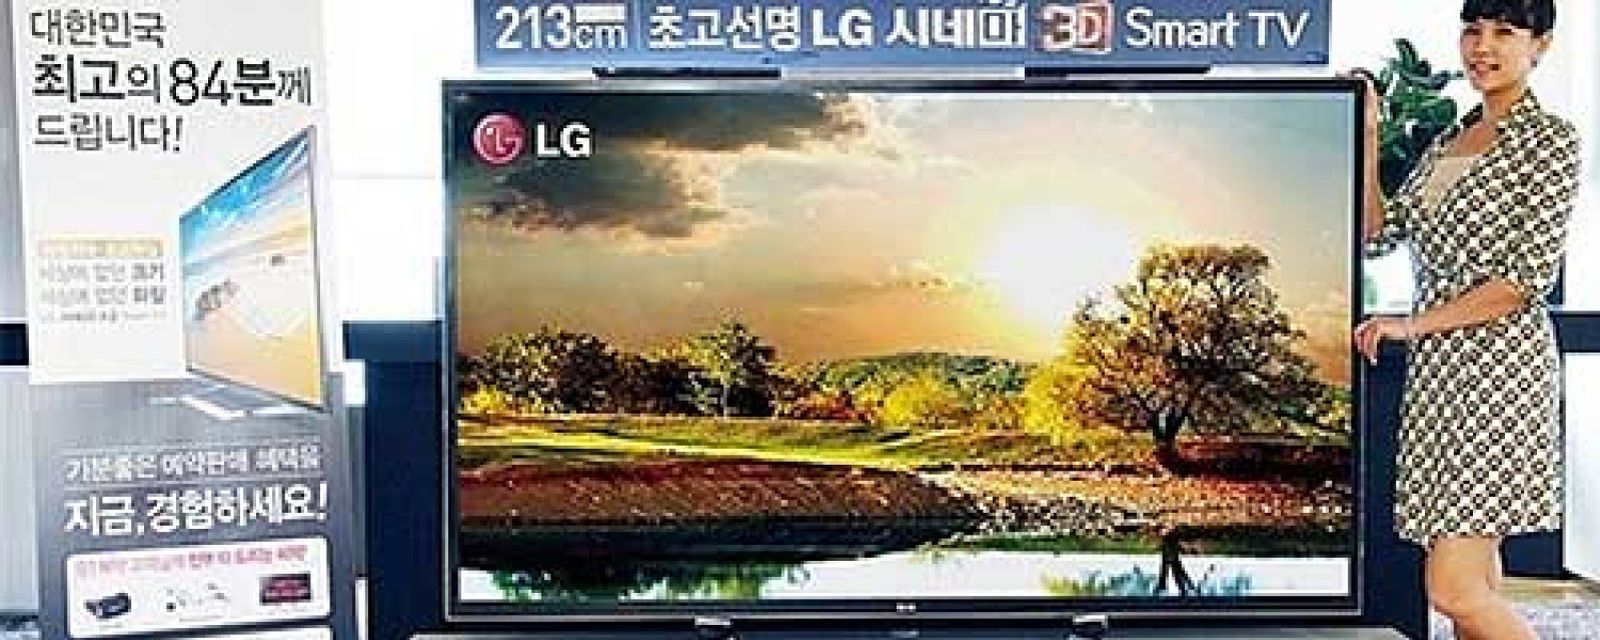 Foto: LG lanza el televisor más grande del mercado: el HDTV 4K de 84 pulgadas